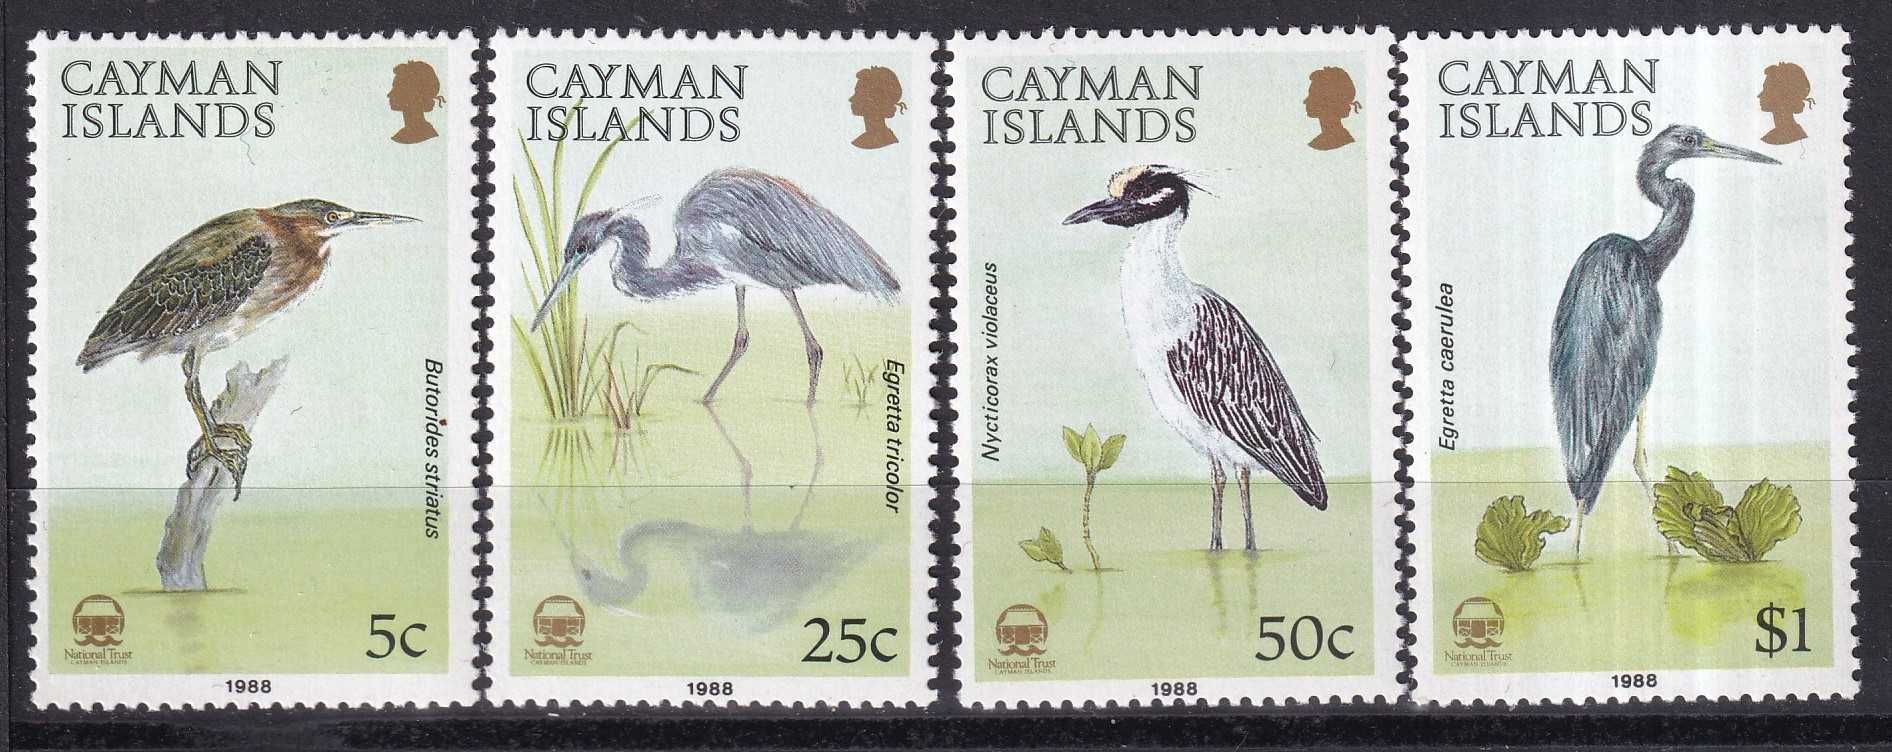 znaczki pocztowe - Kajmany 1988 Mi.604-607 cena 19,90 zł kat.17,50€